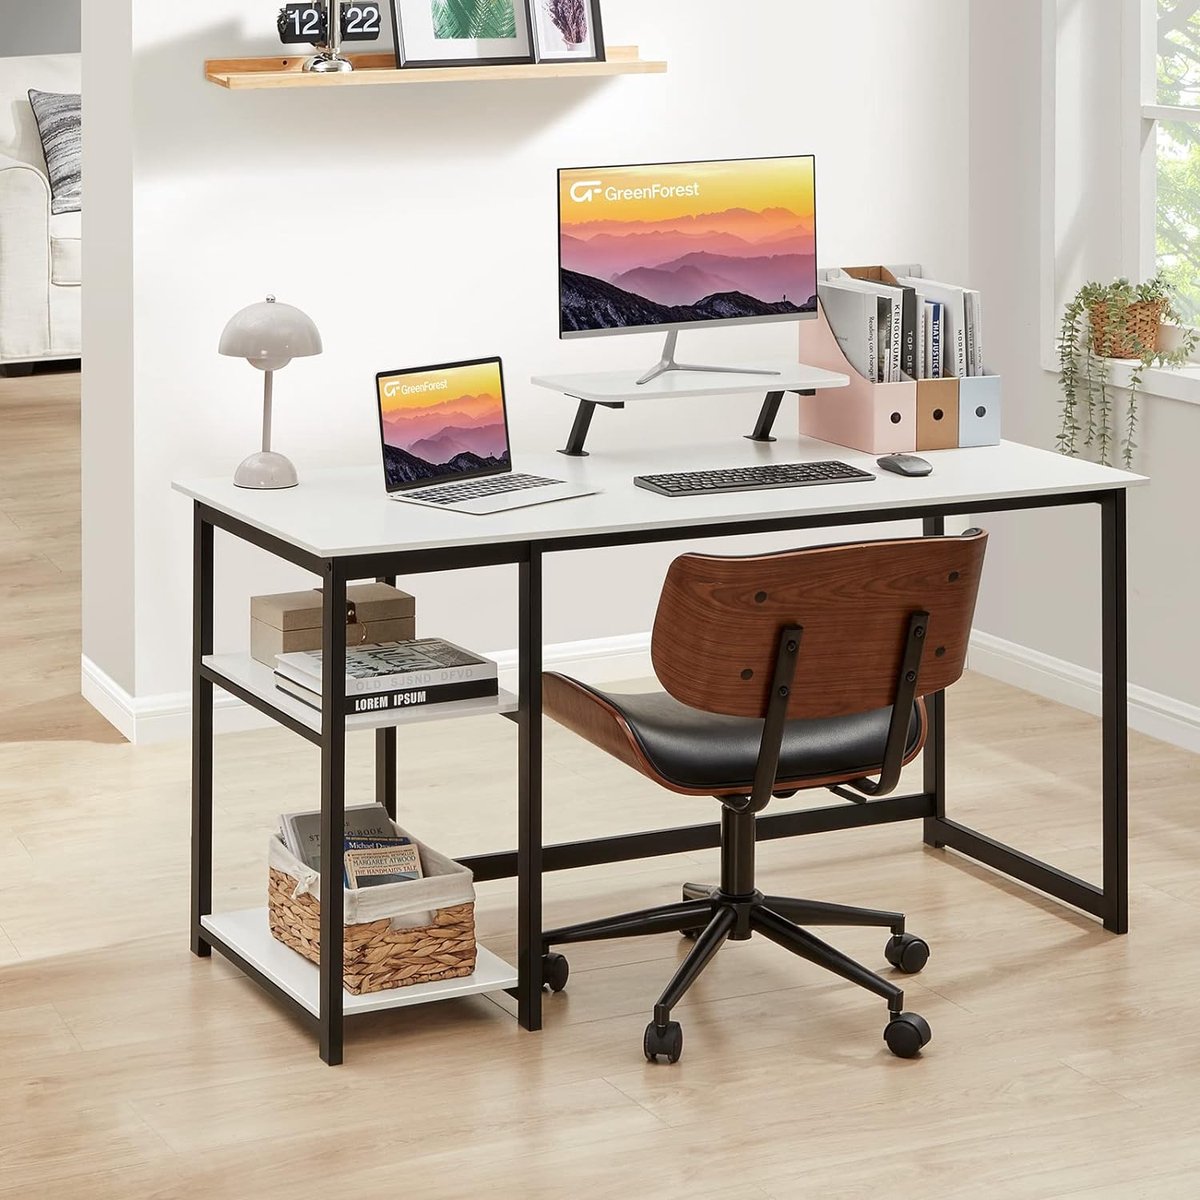 computer thuisbureau met display stand en flip plank, 120cm moderne eenvoudige schrijfstudie PC werkbank,wit